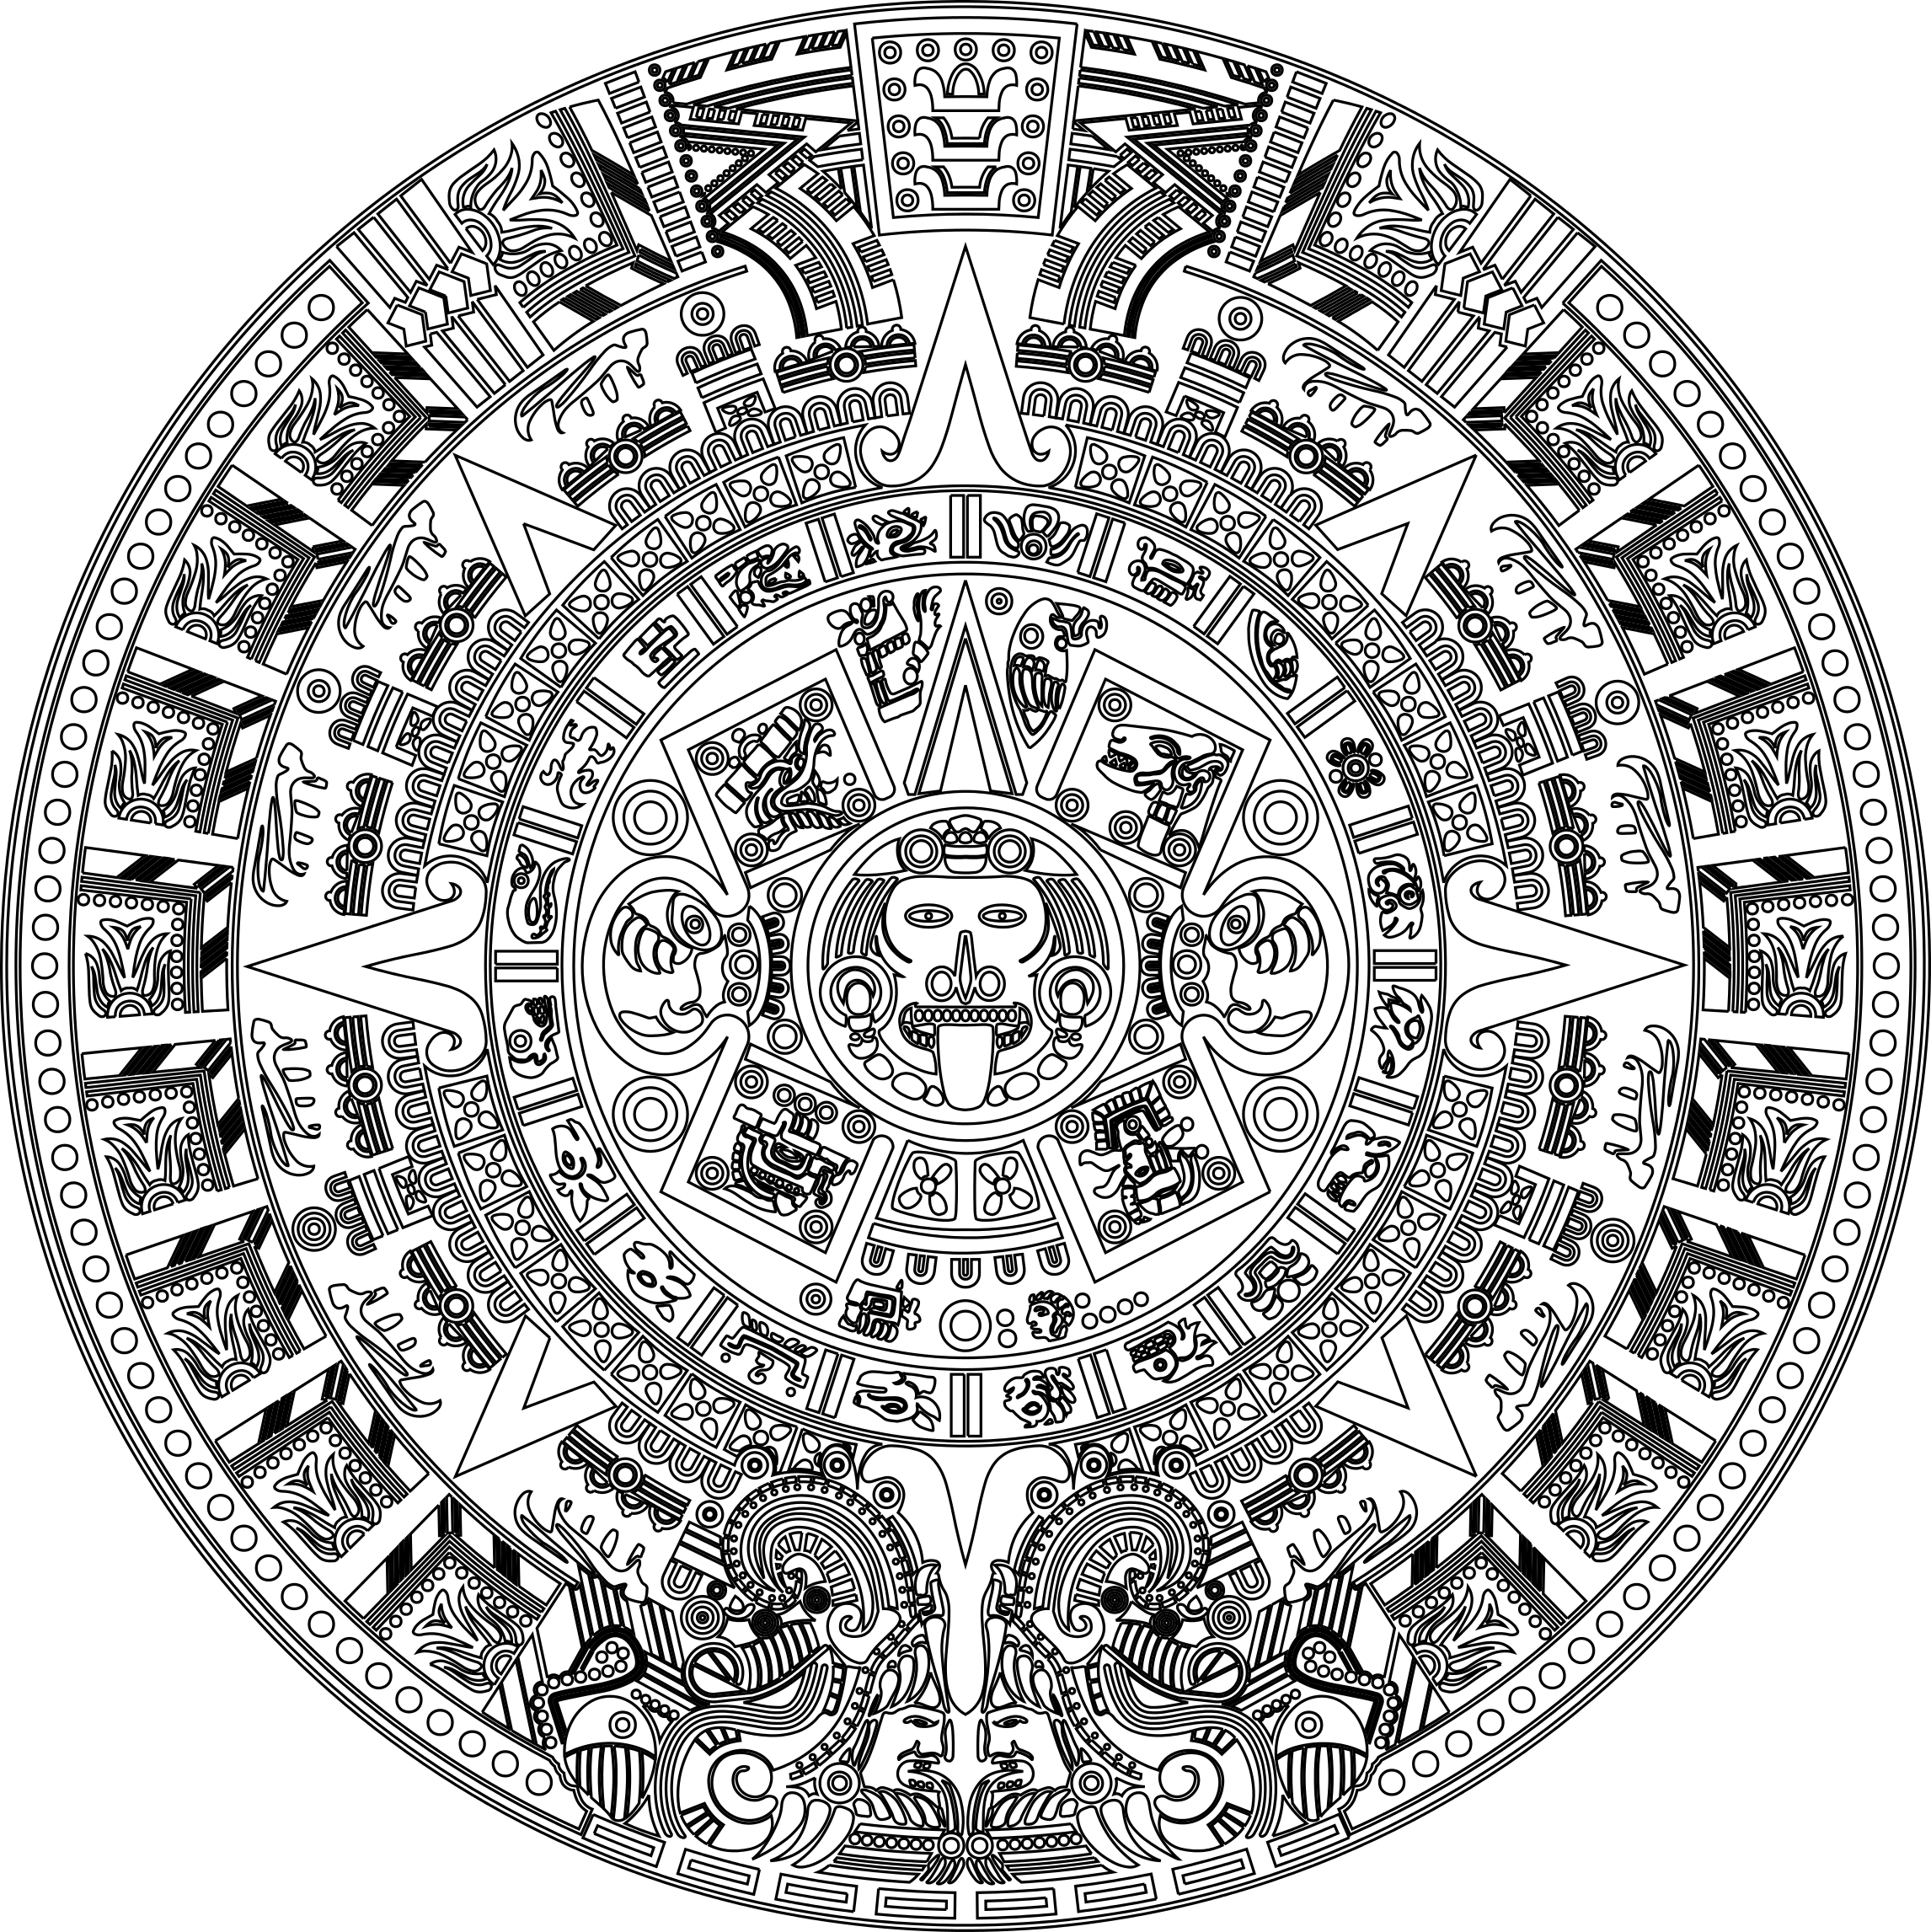 Календарь майя читать 1 глава. Календарь ацтеков вектор. Календарь ацтеков камень. Орнамент Майя и ацтеков на Камне. Камень солнца ацтеков вектор.